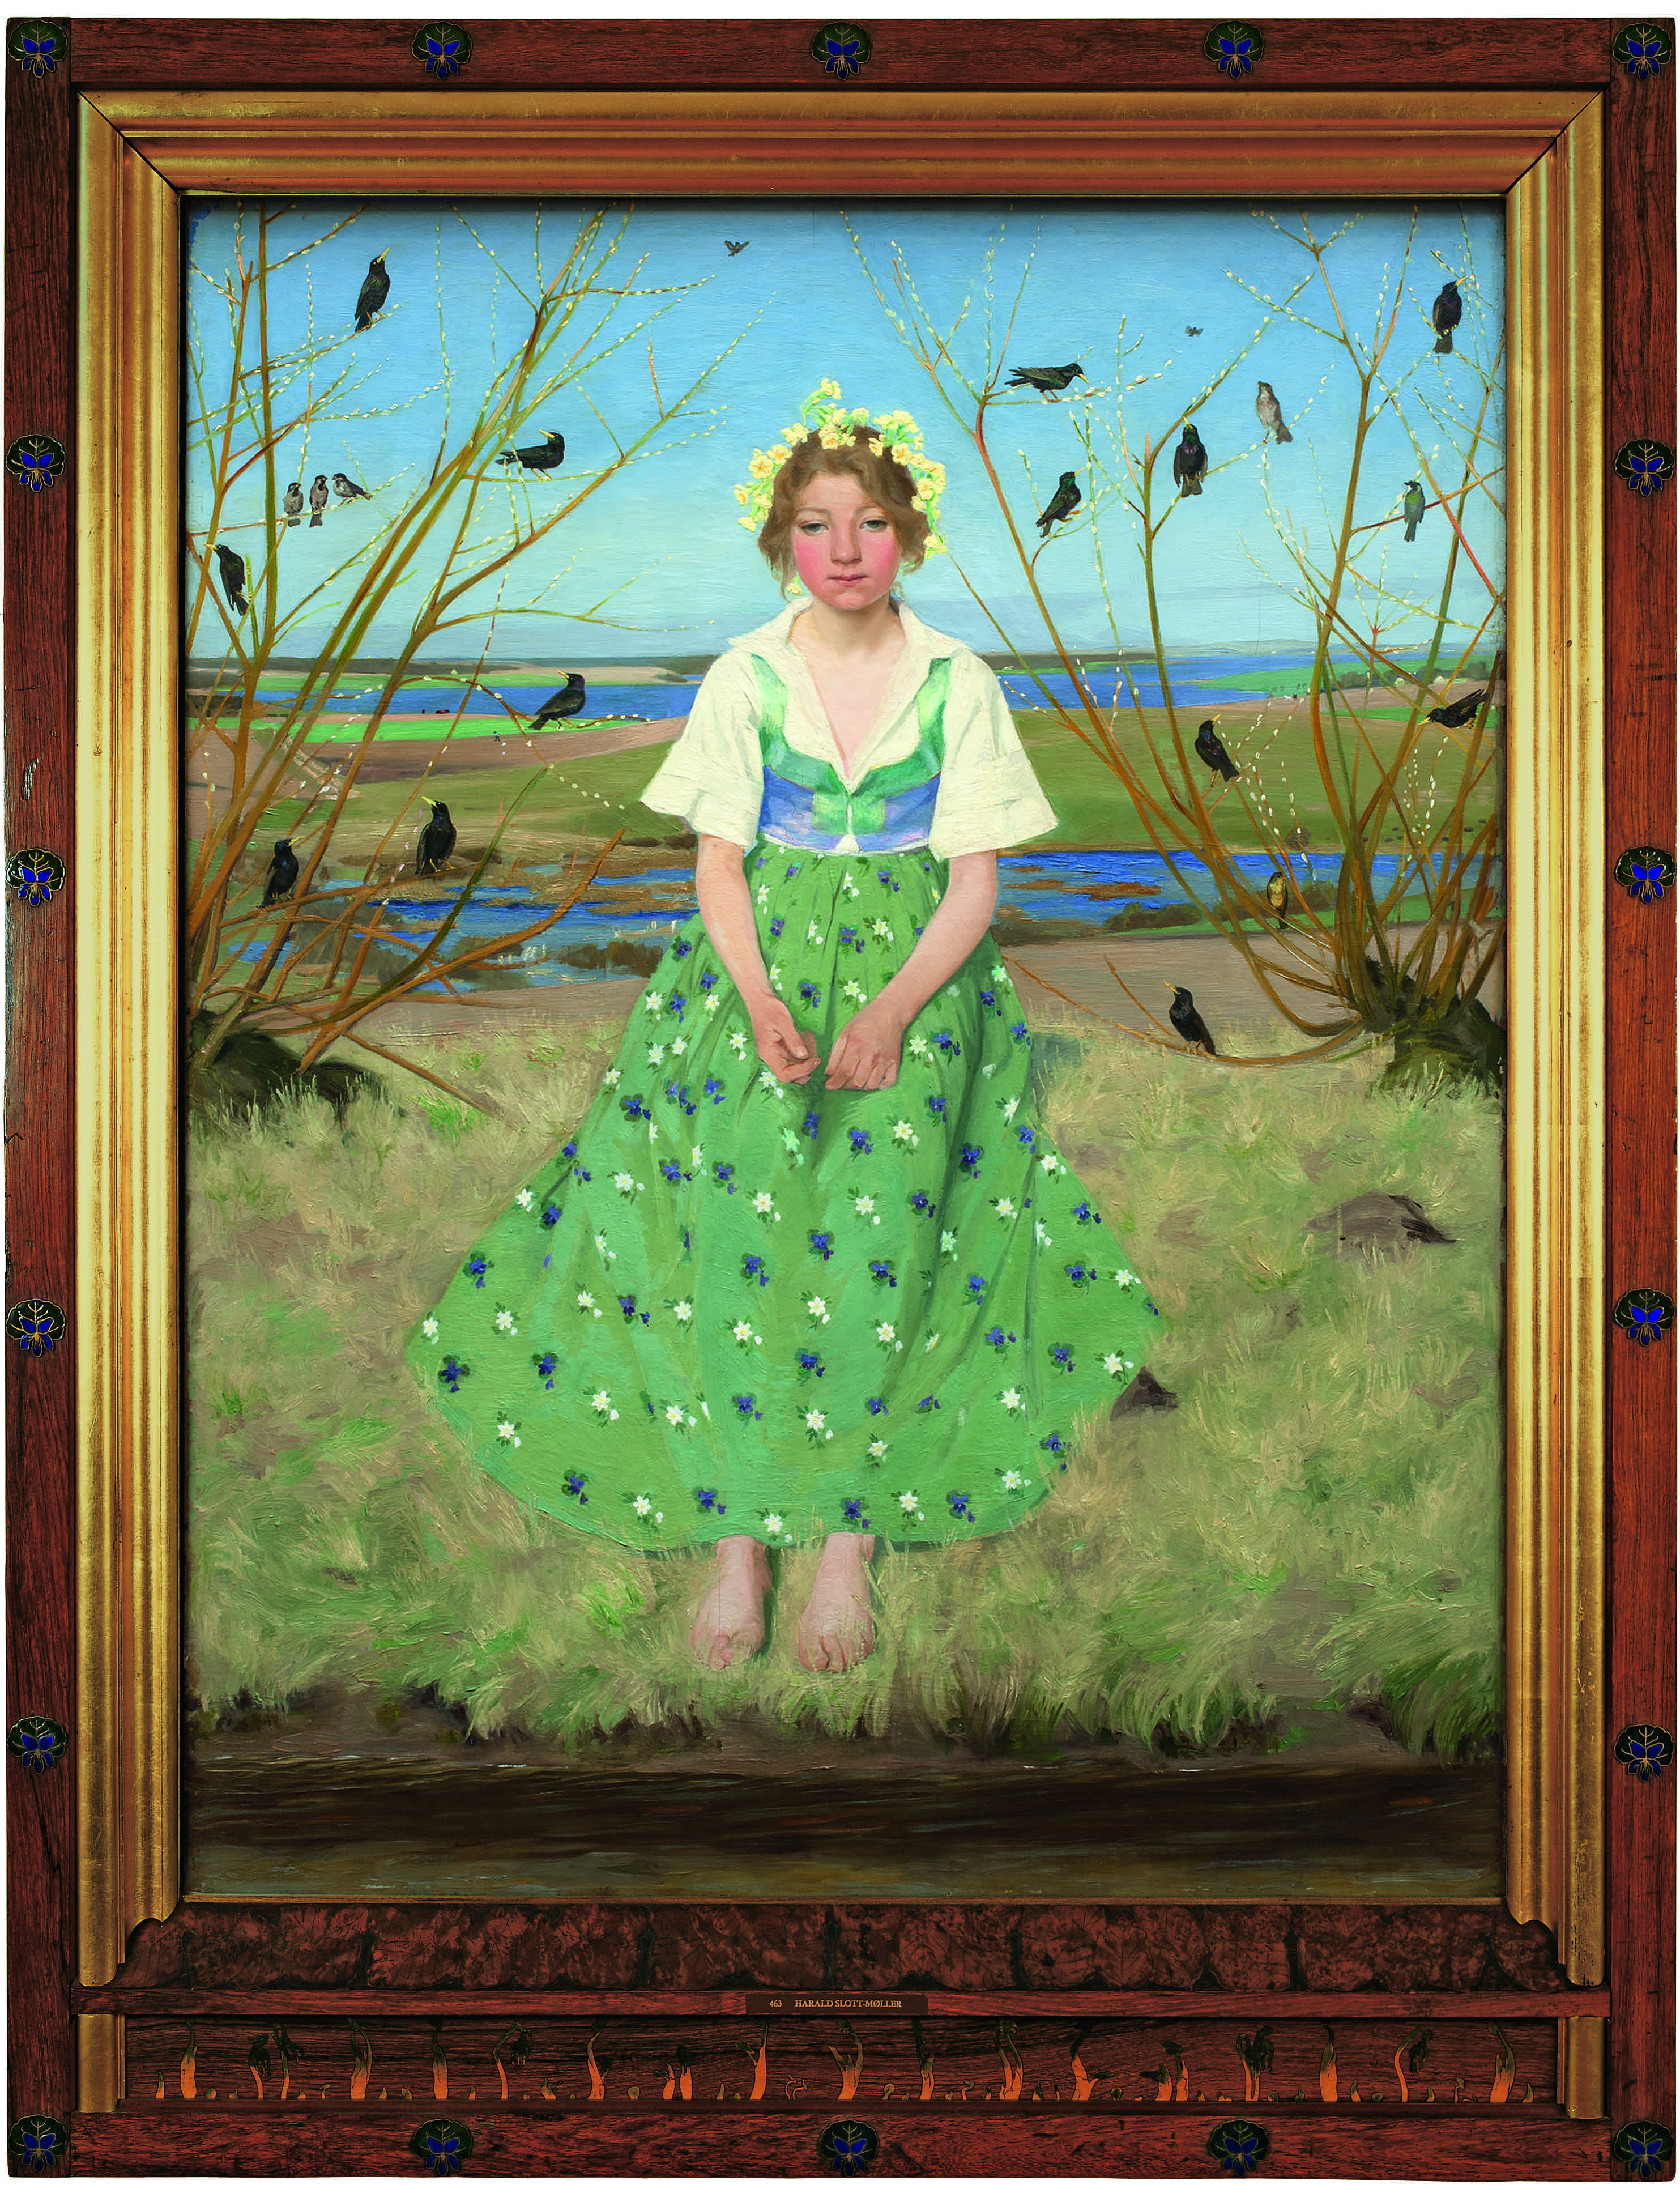 بهار by Harald Slott-Møller - 1896 - 120 x 93 cm 